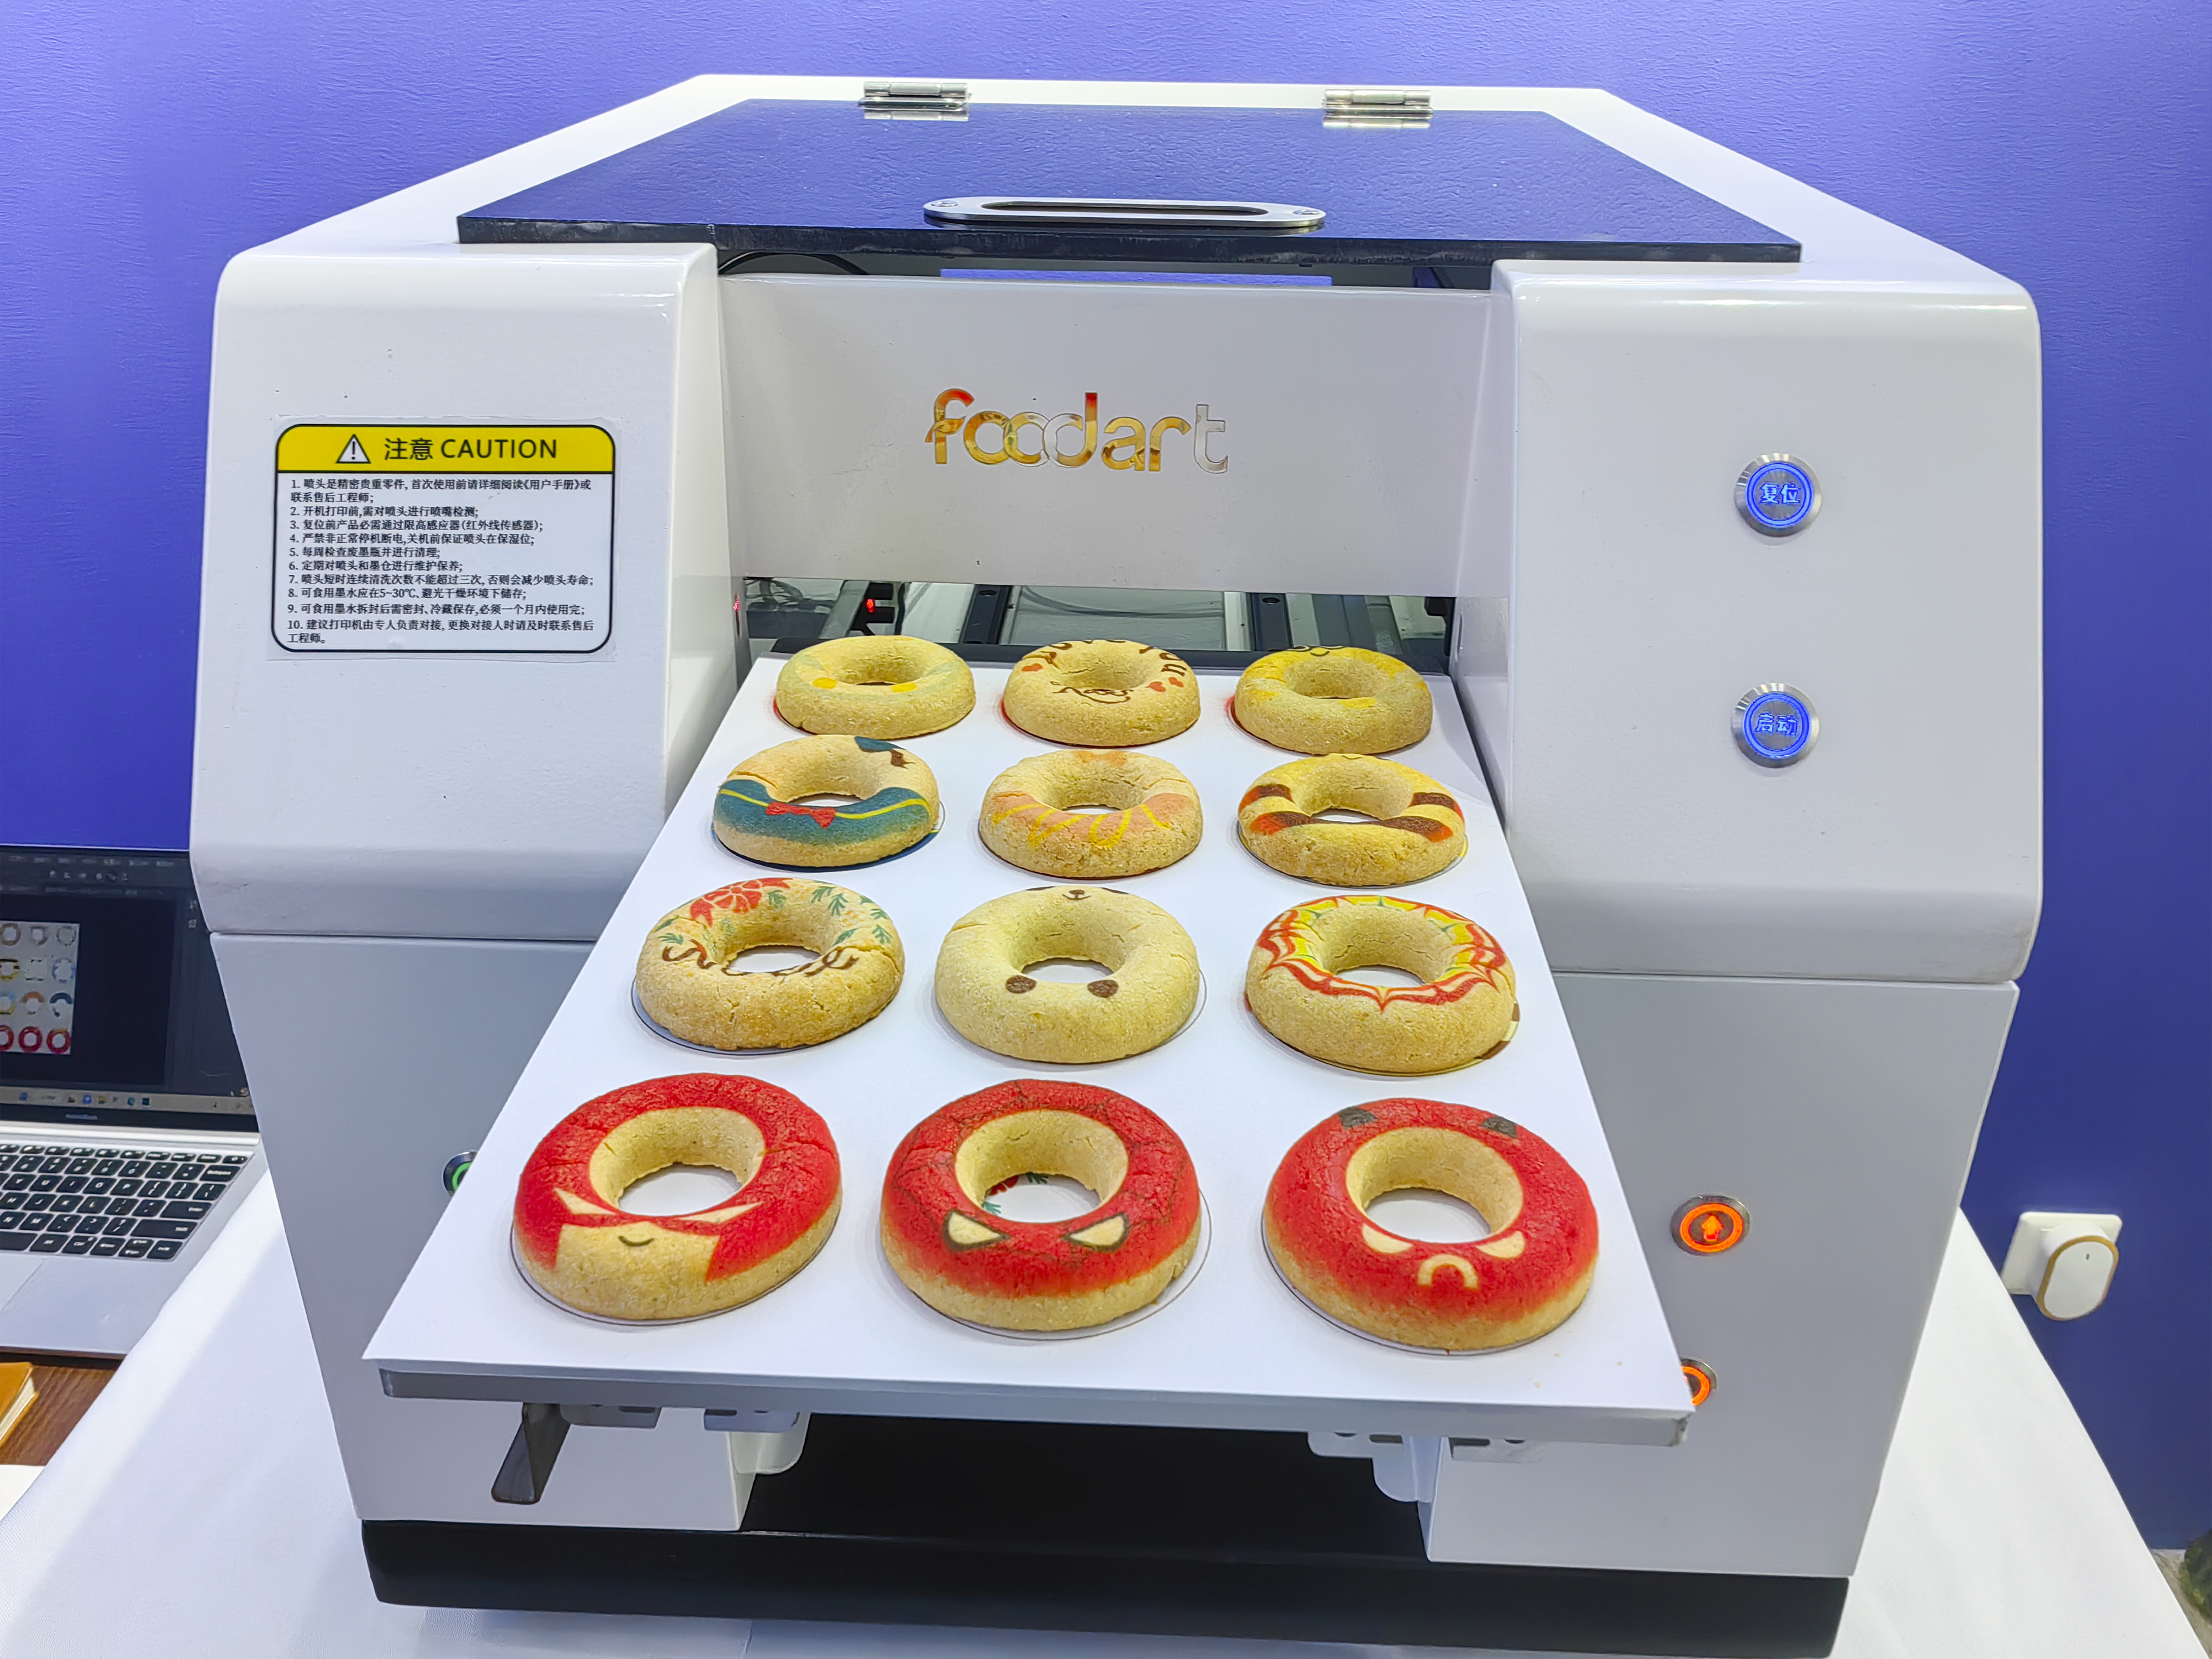 Technologie d'impression alimentaire Nouvelle machine d'impression alimentaire pour imprimer des biscuits Creative Circle, afin que vous puissiez voir le cercle